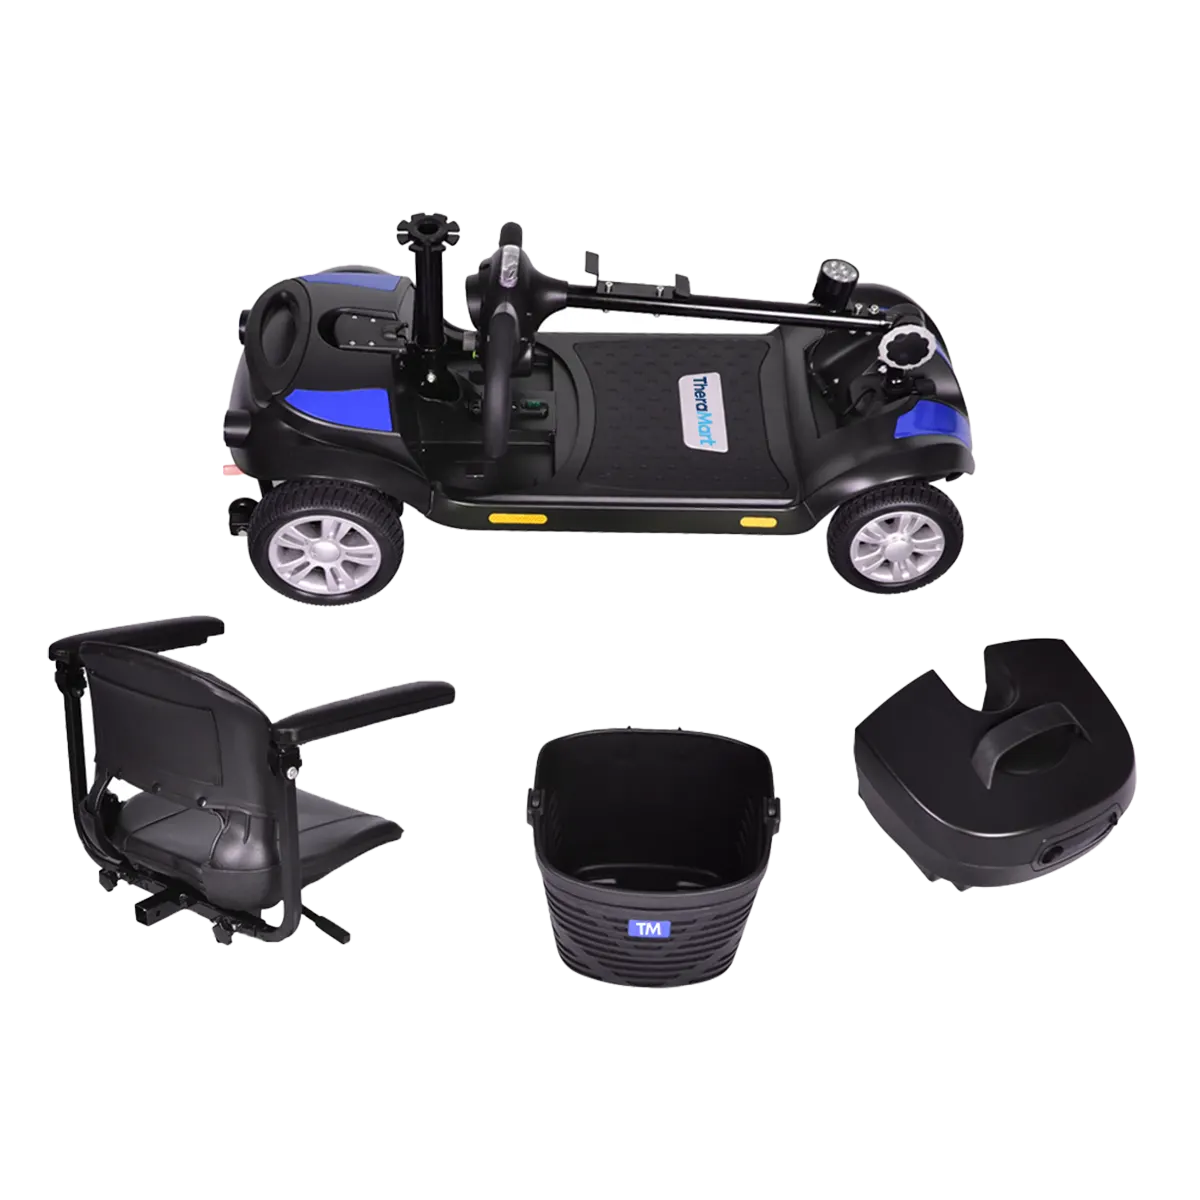 Movilidad eléctrica para adultos mayores, La movilidad eléctrica ya está  al alcance de todos, el nuevo modelo XR2 para adultos con poca movilidad ya  disponible en Eco-Moto. 📍Avenida 31 Poniente